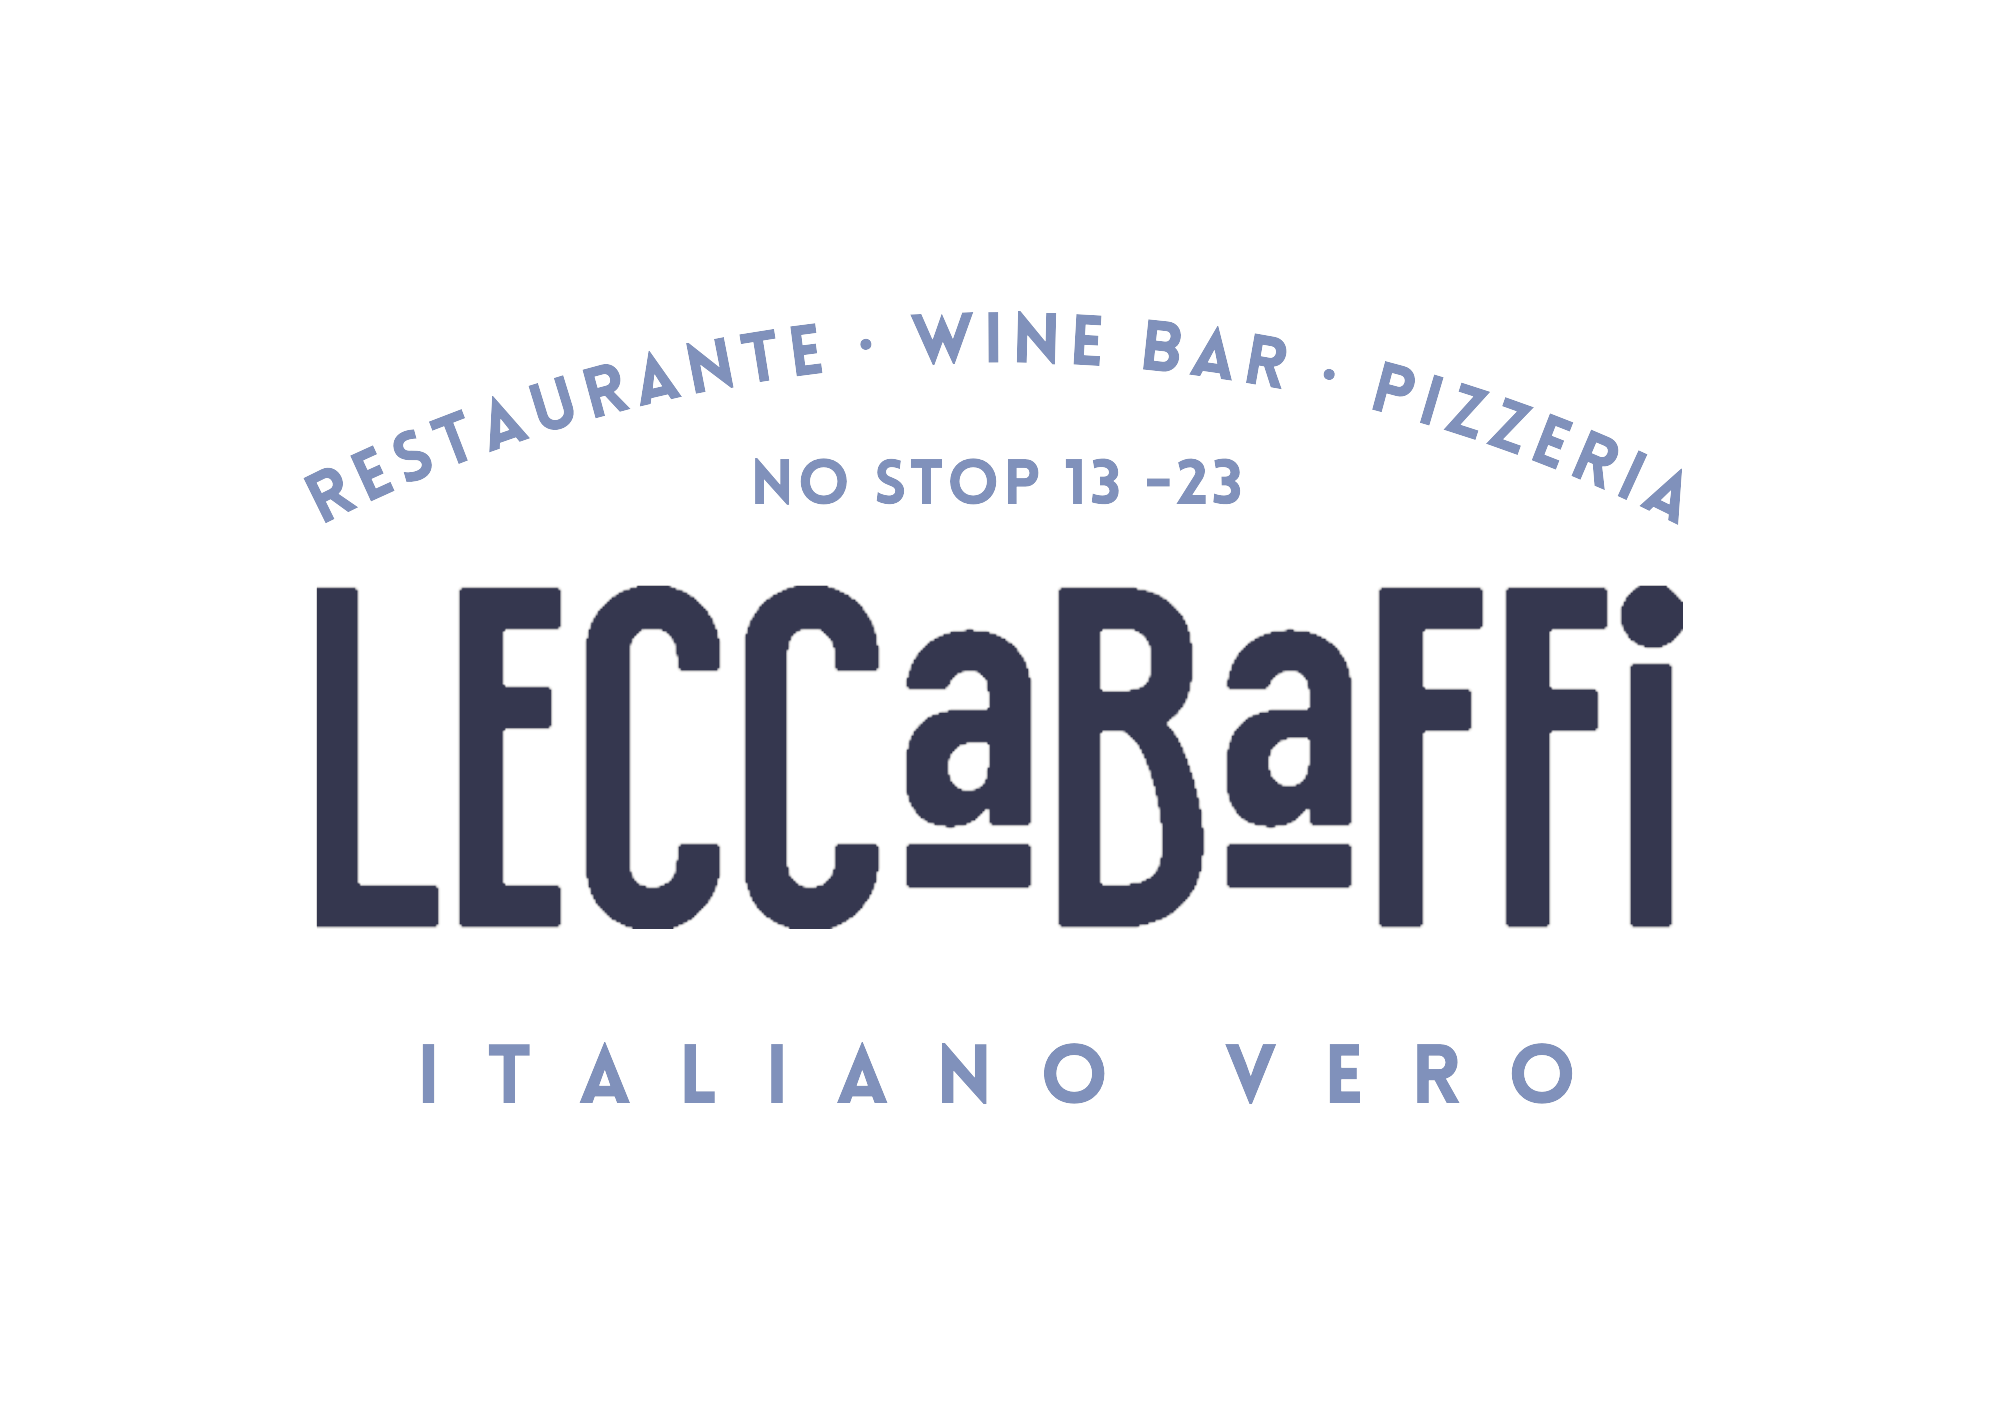 LeccaBaffi Italiano Vero